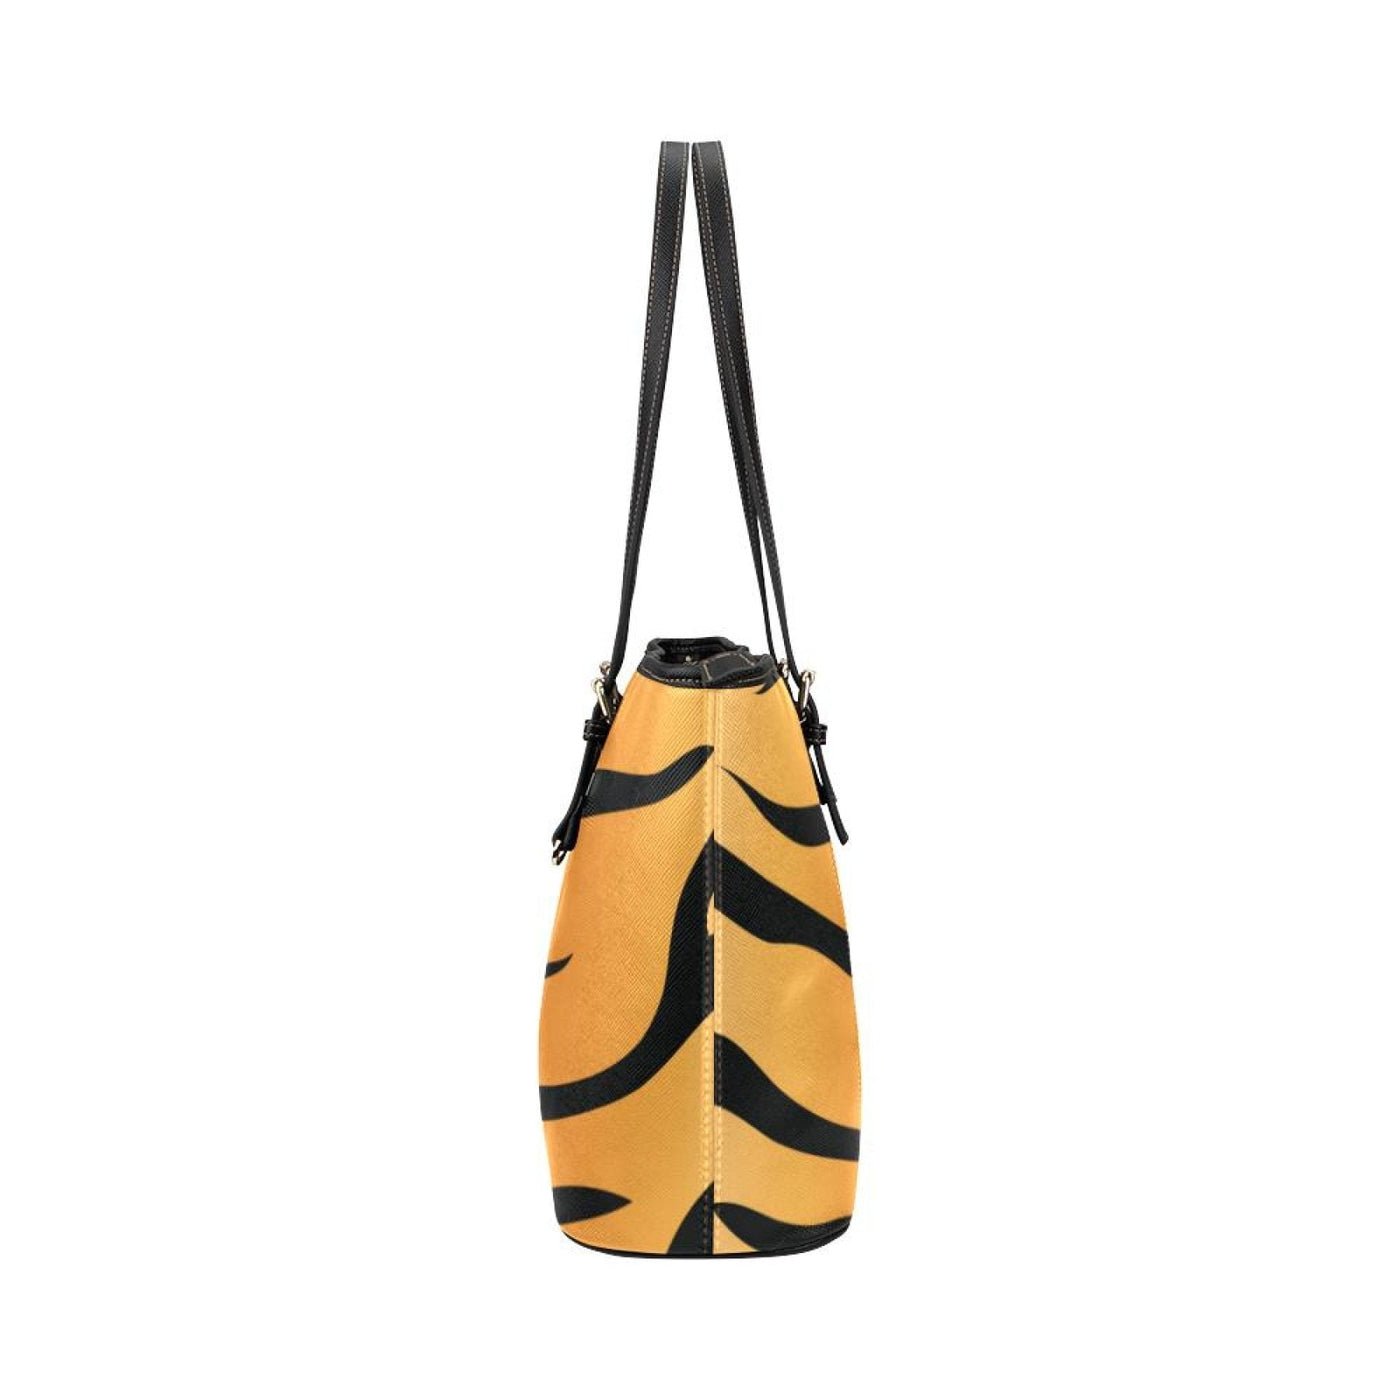 Large Leather Tote Shoulder Bag - Orange And Black Tiger Stripe - Bags